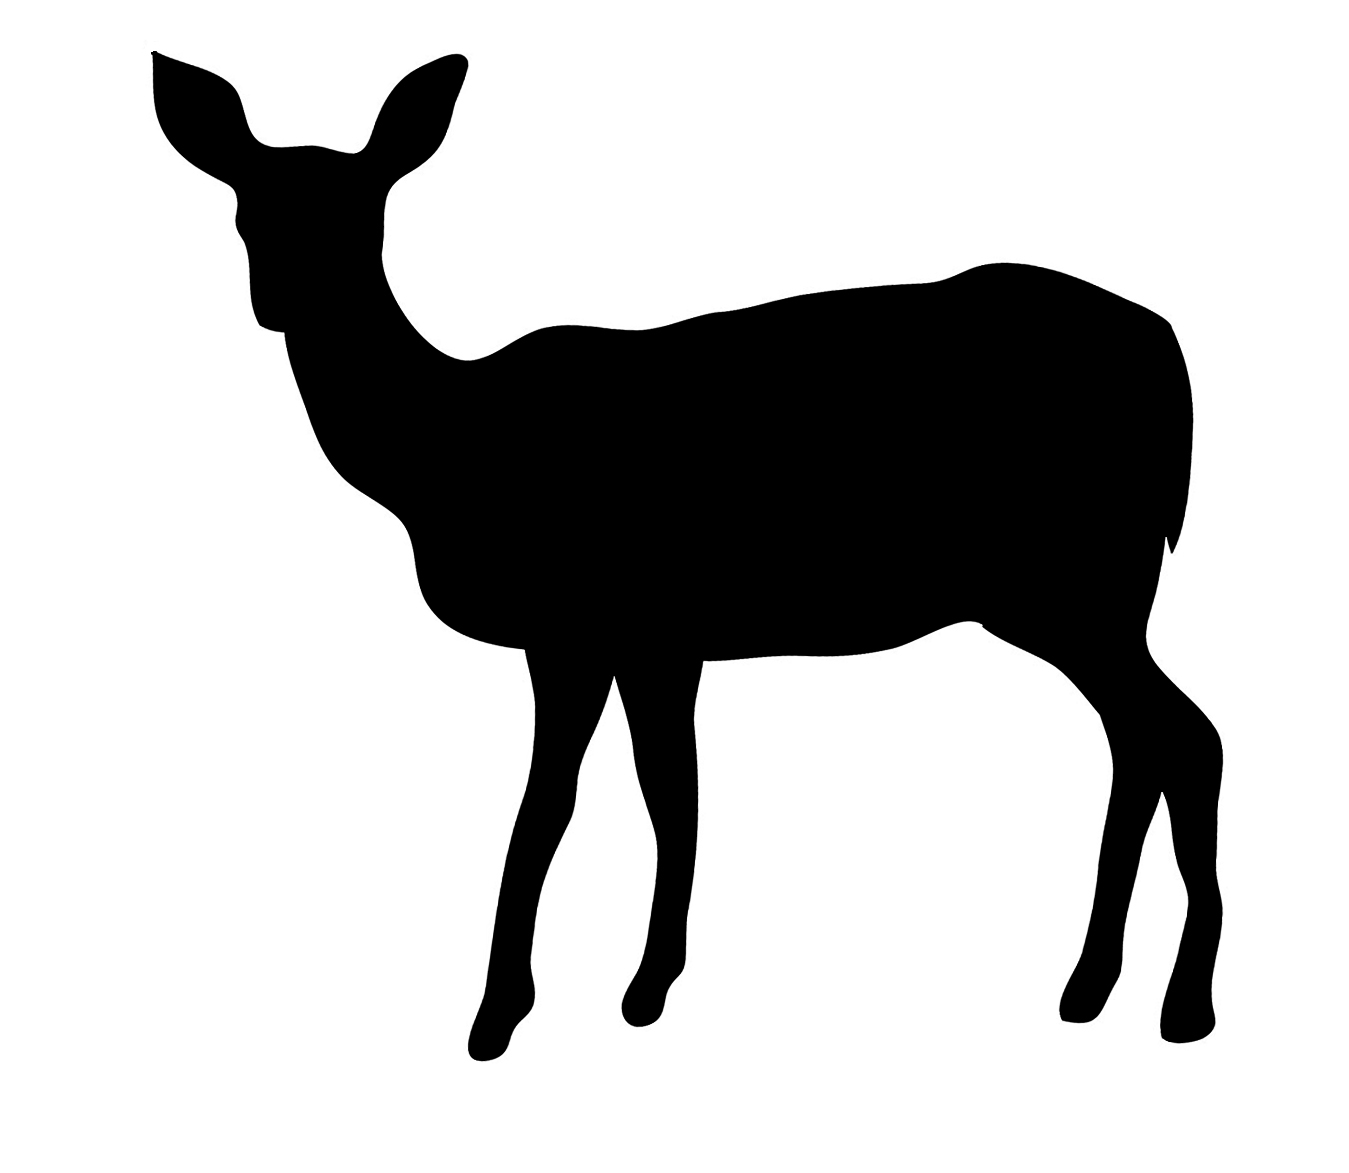 Deer silhouette 55